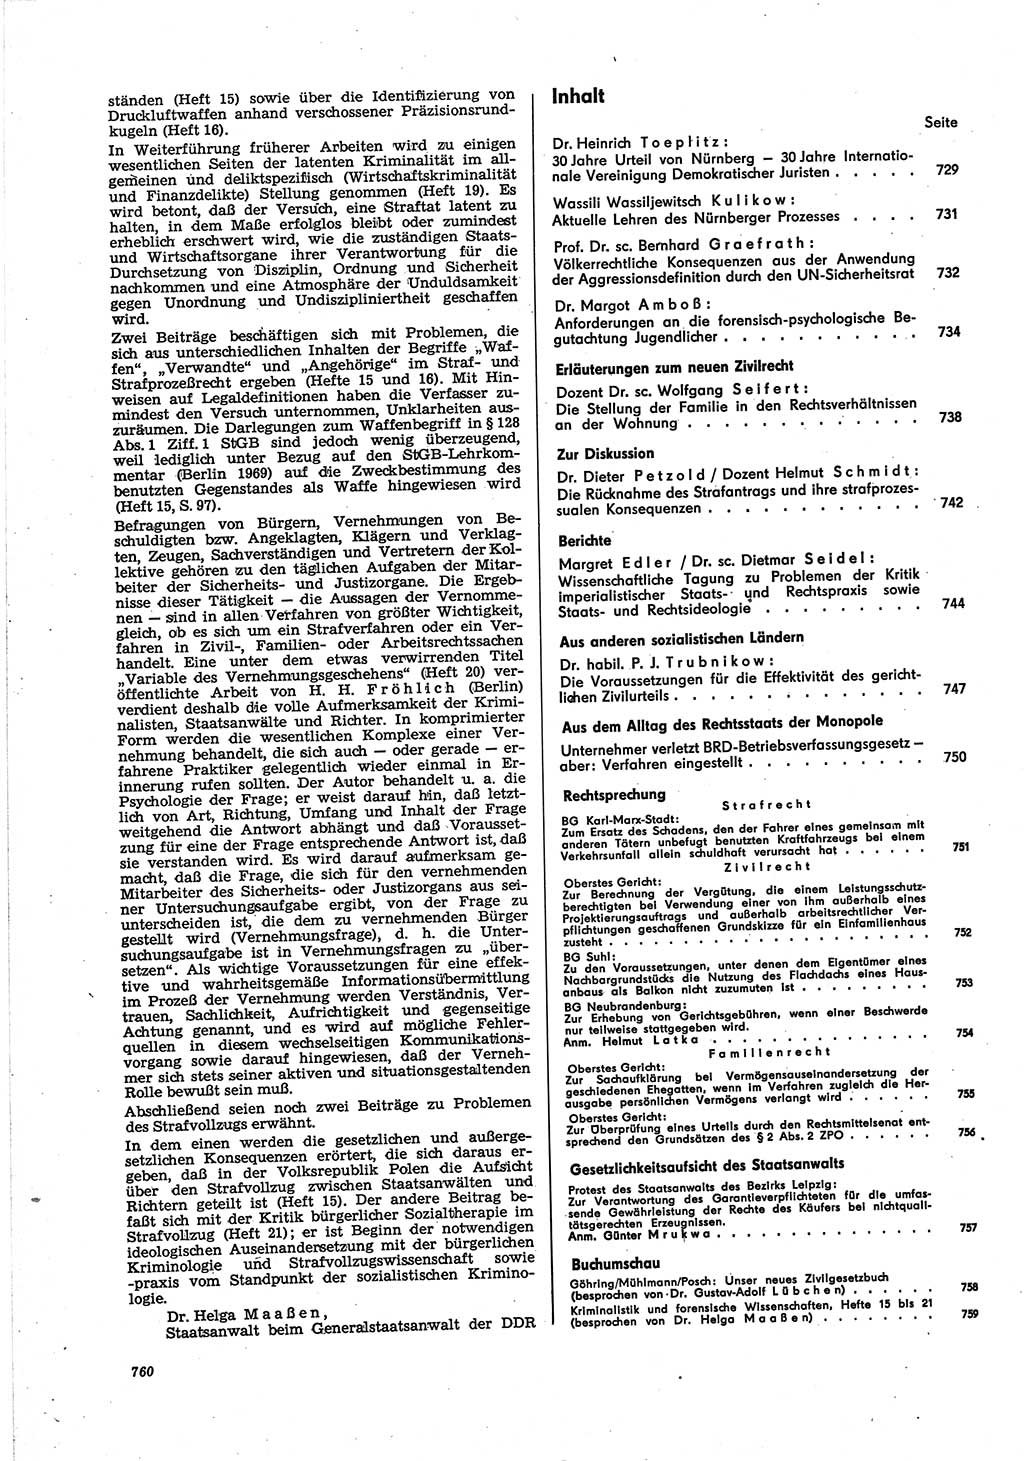 Neue Justiz (NJ), Zeitschrift für Recht und Rechtswissenschaft [Deutsche Demokratische Republik (DDR)], 30. Jahrgang 1976, Seite 760 (NJ DDR 1976, S. 760)